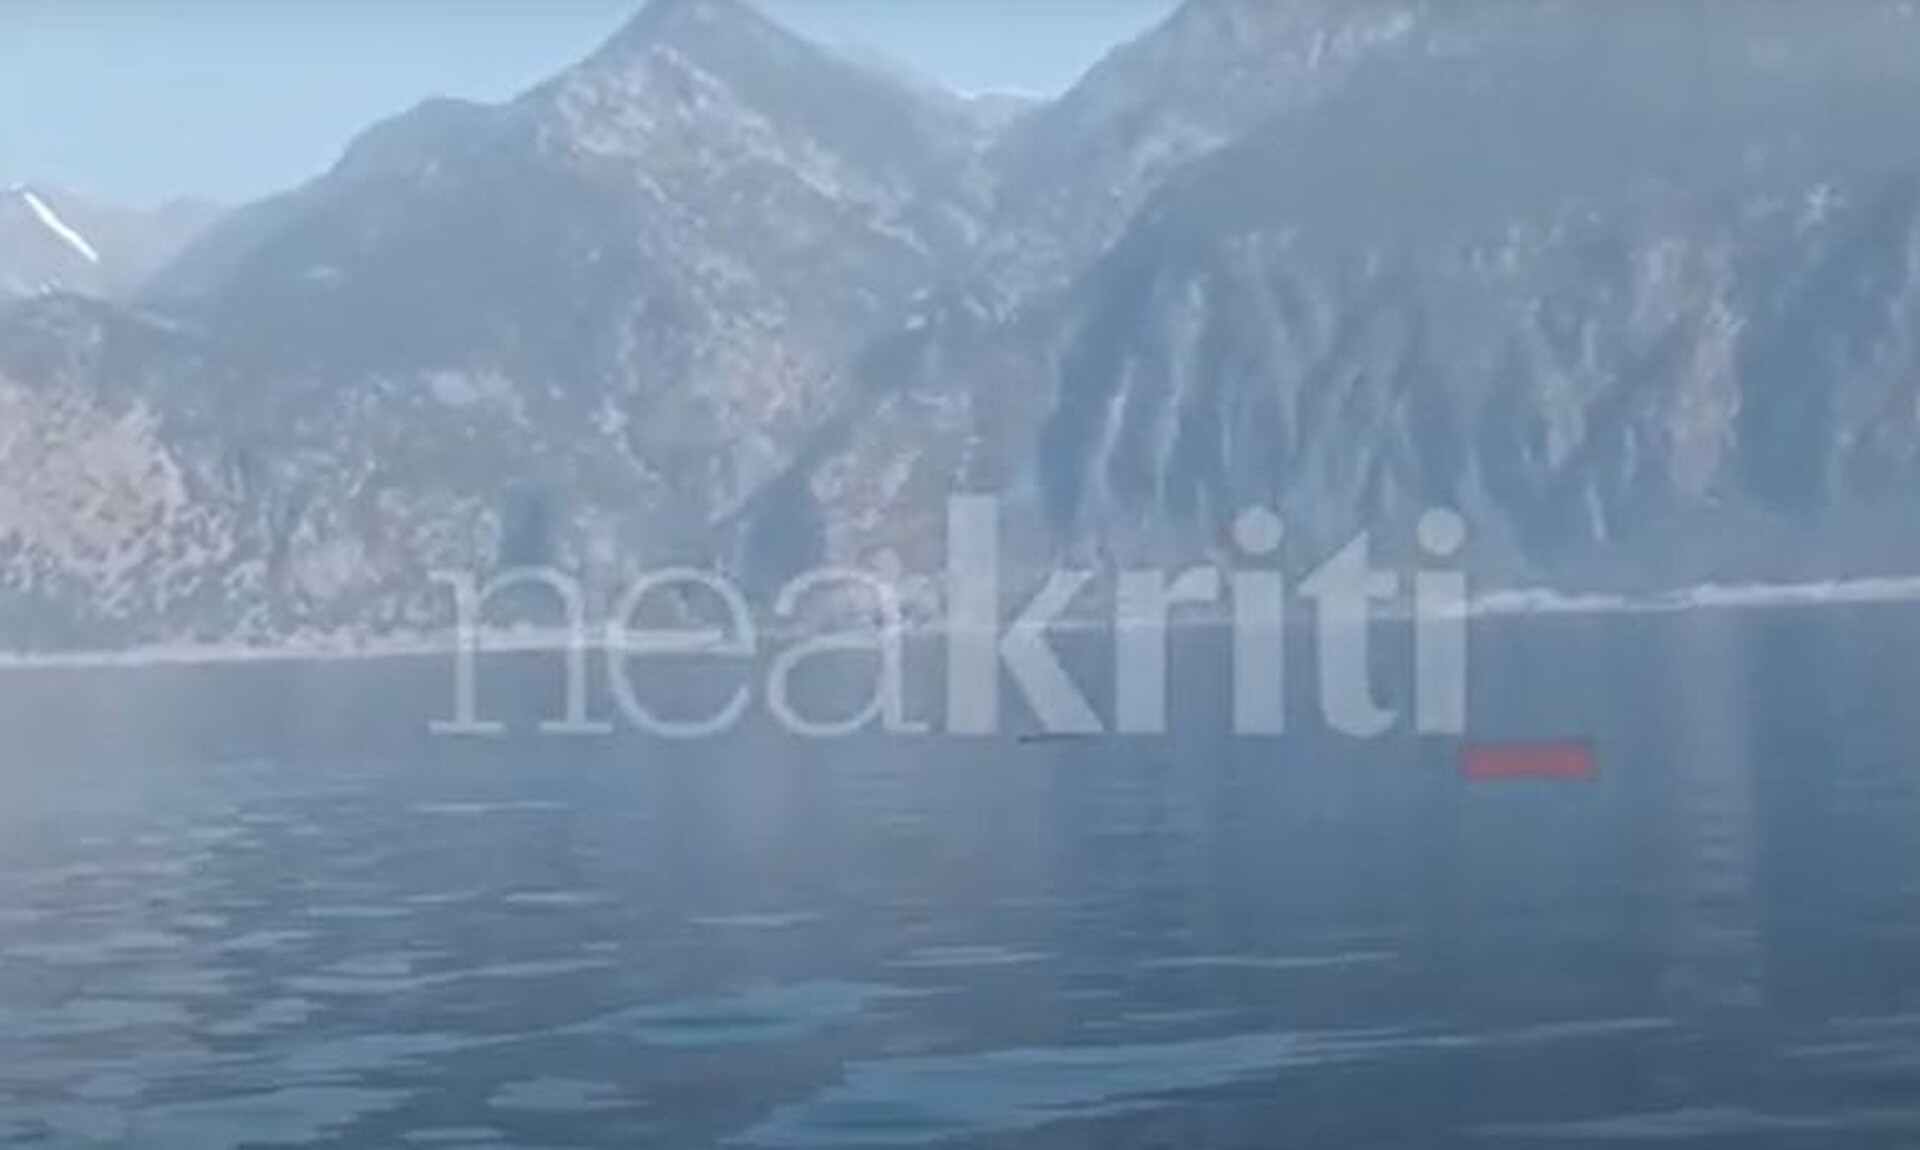 Φάλαινα φυσητήρας στα νότια της Κρήτης - Εντυπωσιακά βίντεο